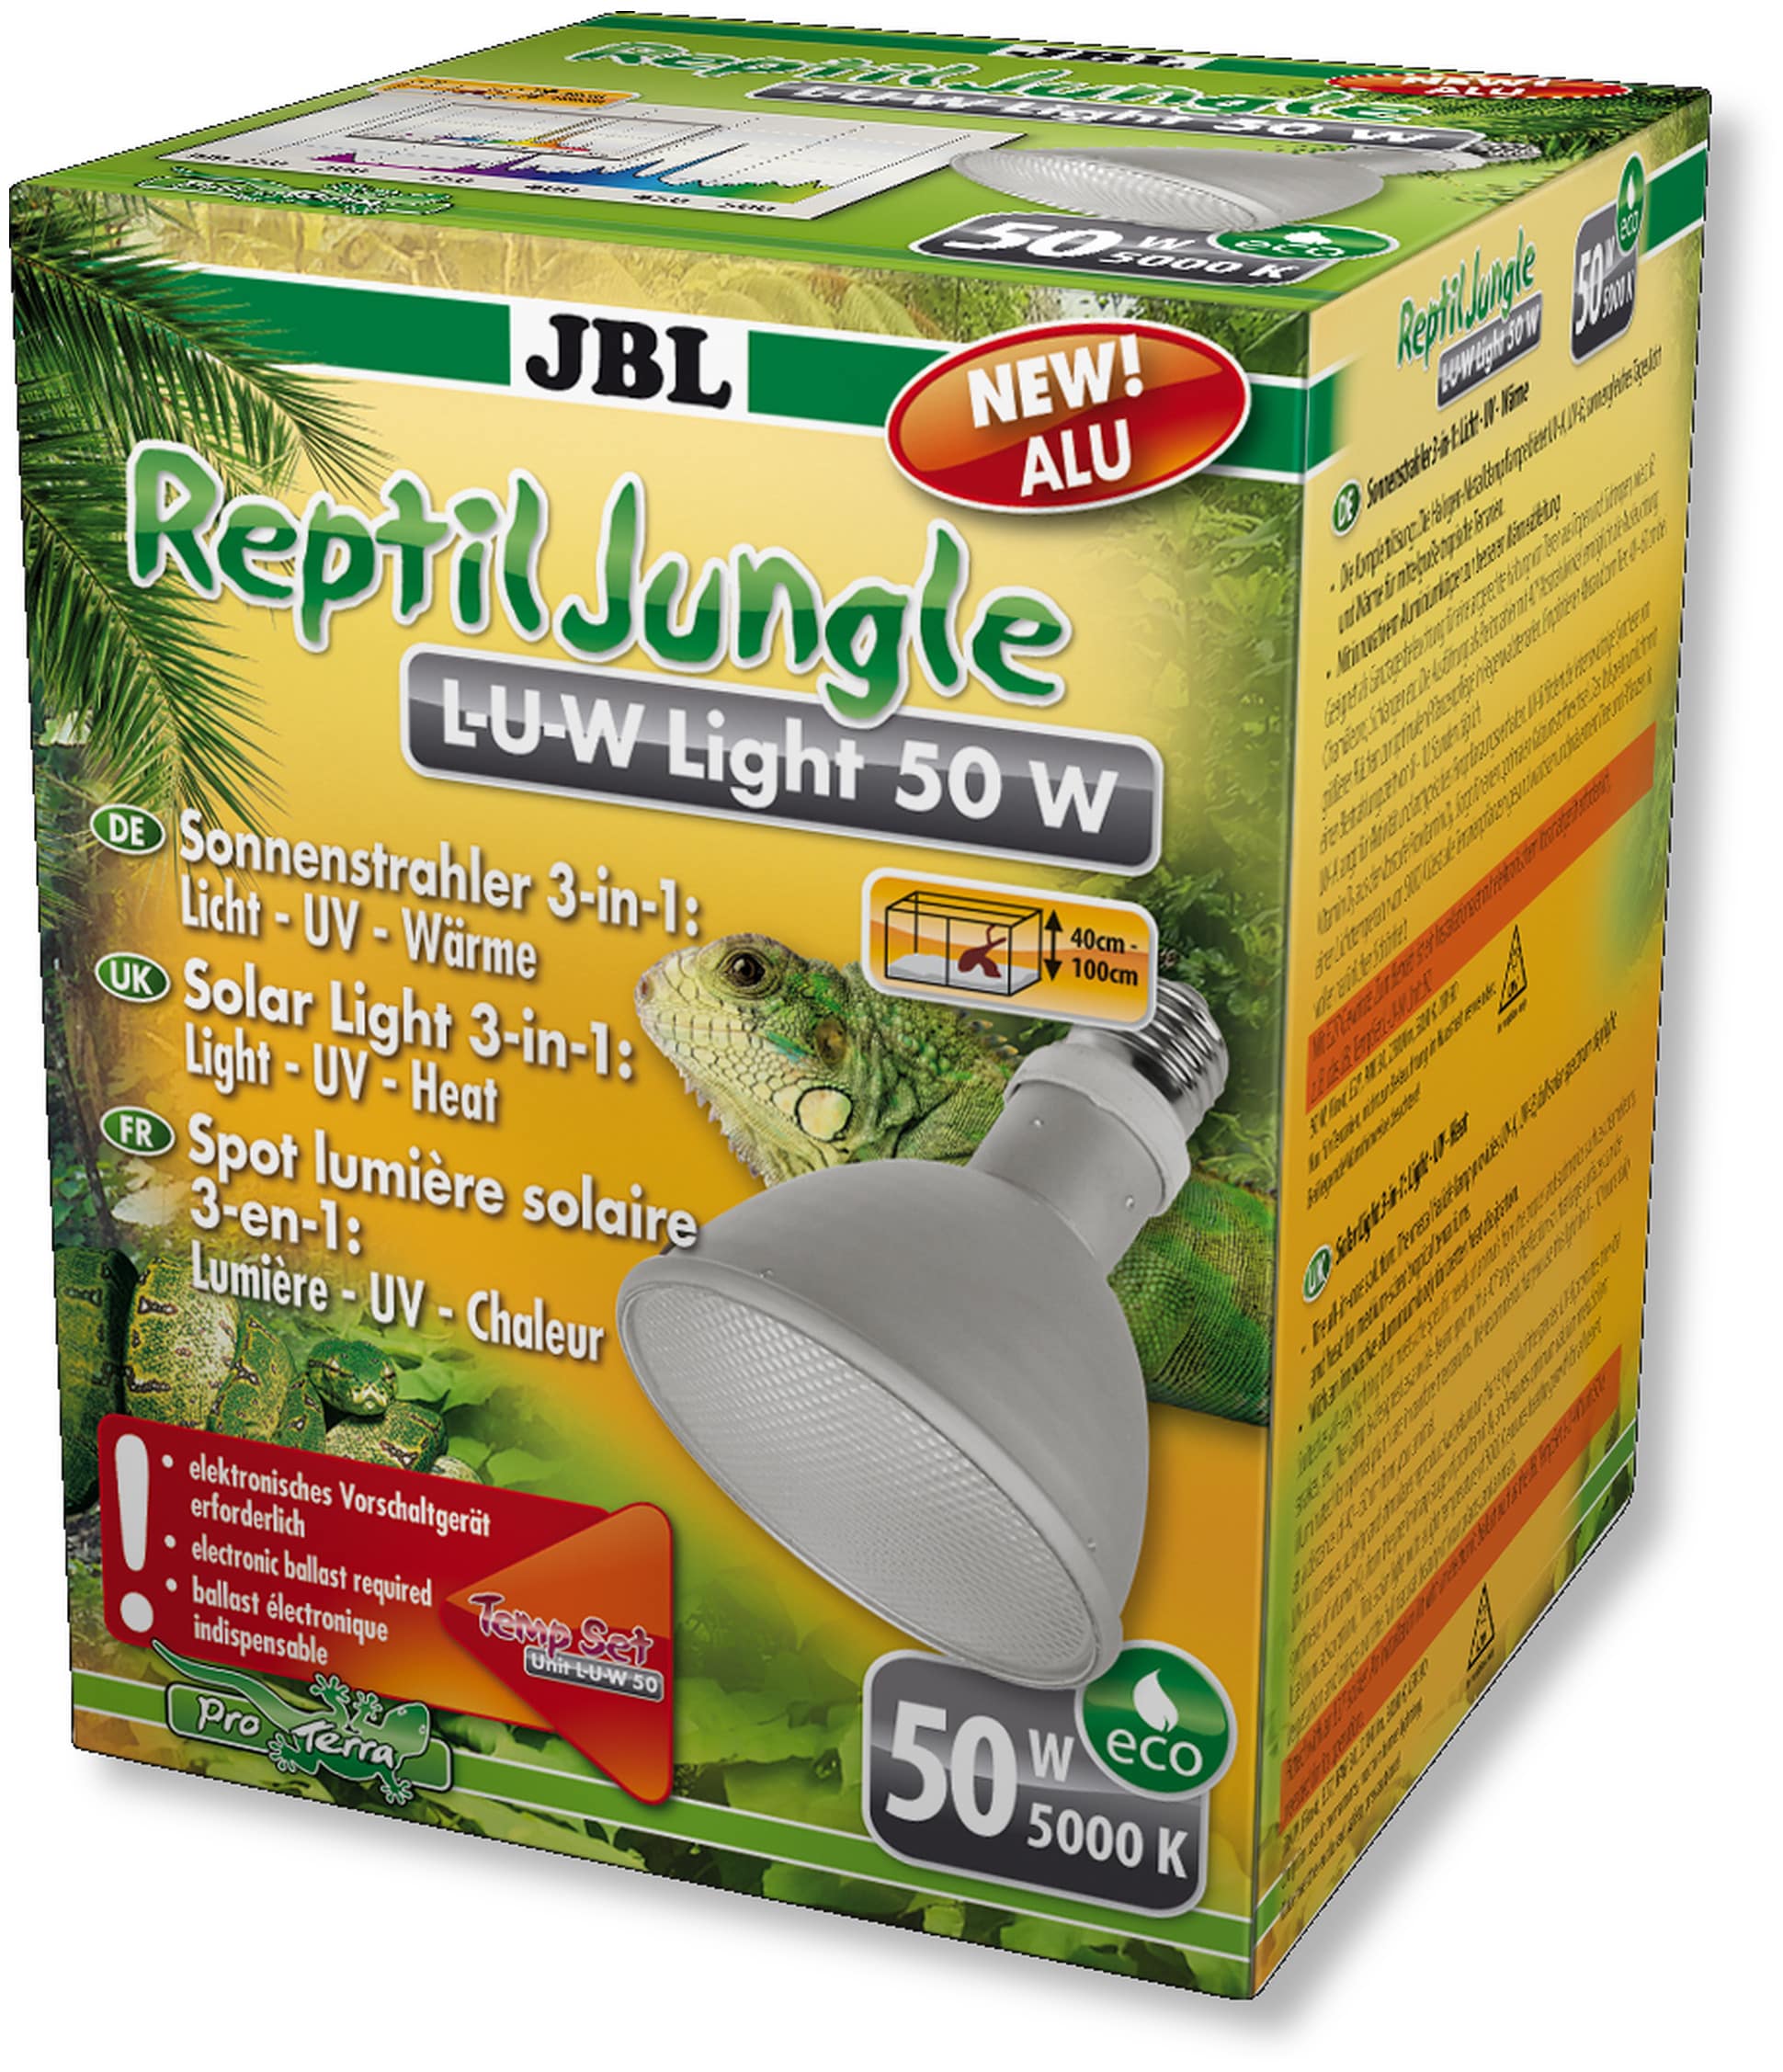 jbl-reptiljungle-l-u-w-light-alu-50w-spot-hqi-en-aluminium-pour-la-reproduction-du-soleil-en-terrarium-de-type-tropical